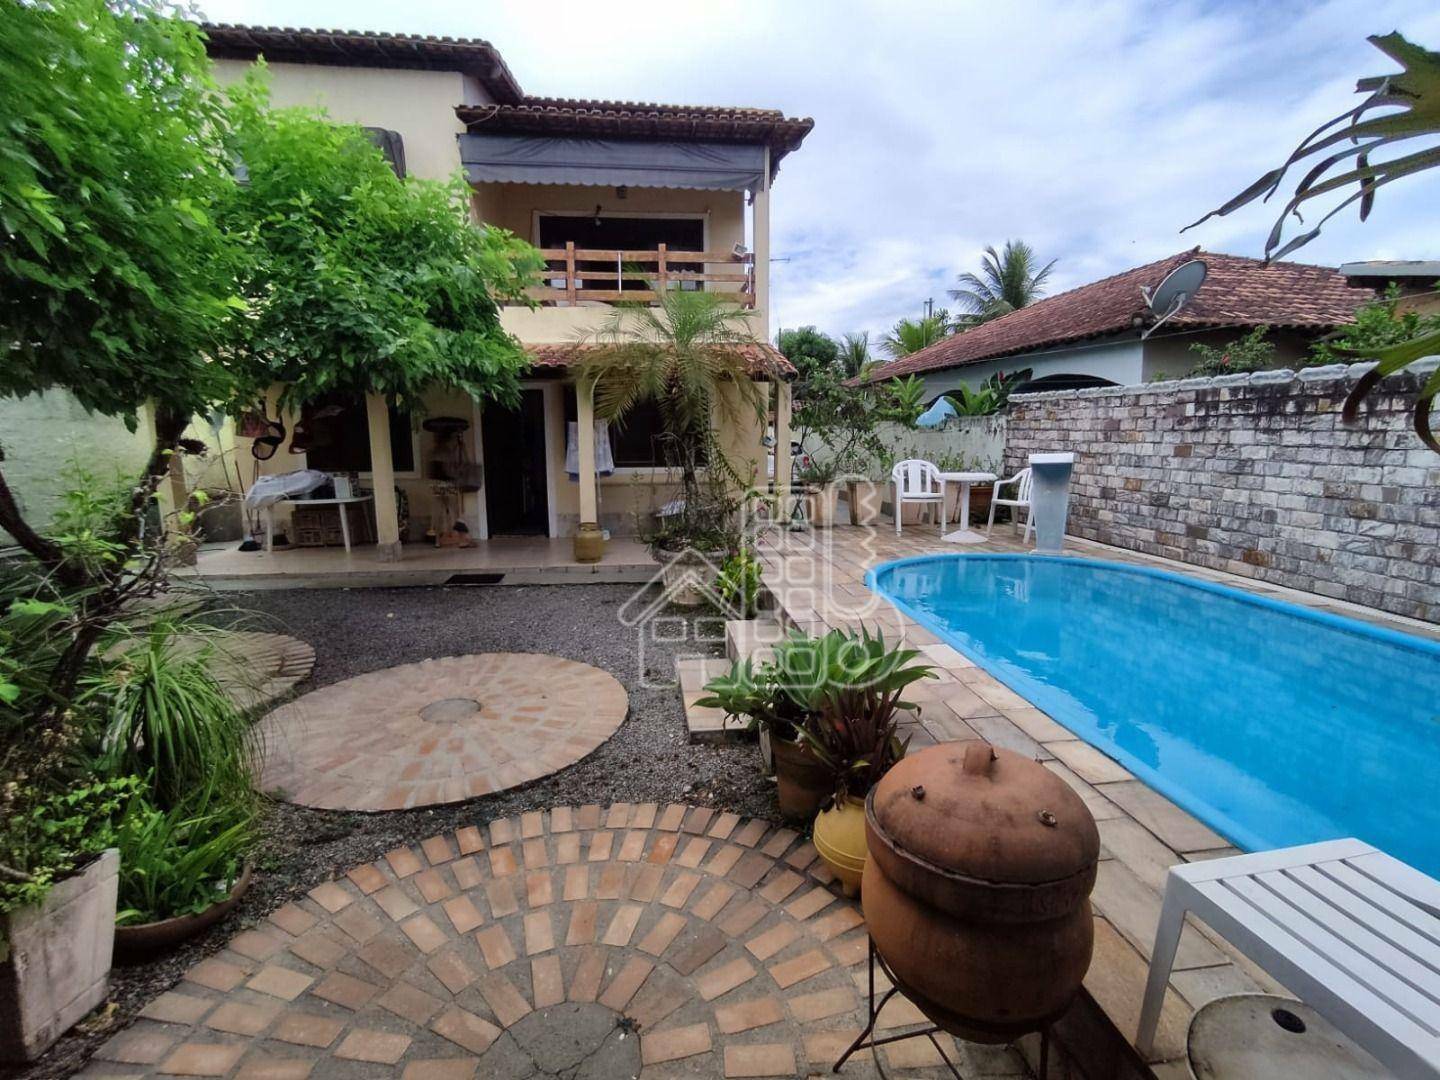 Casa à venda, 275 m² por R$ 670.000,00 - Itaipuaçu - Maricá/RJ